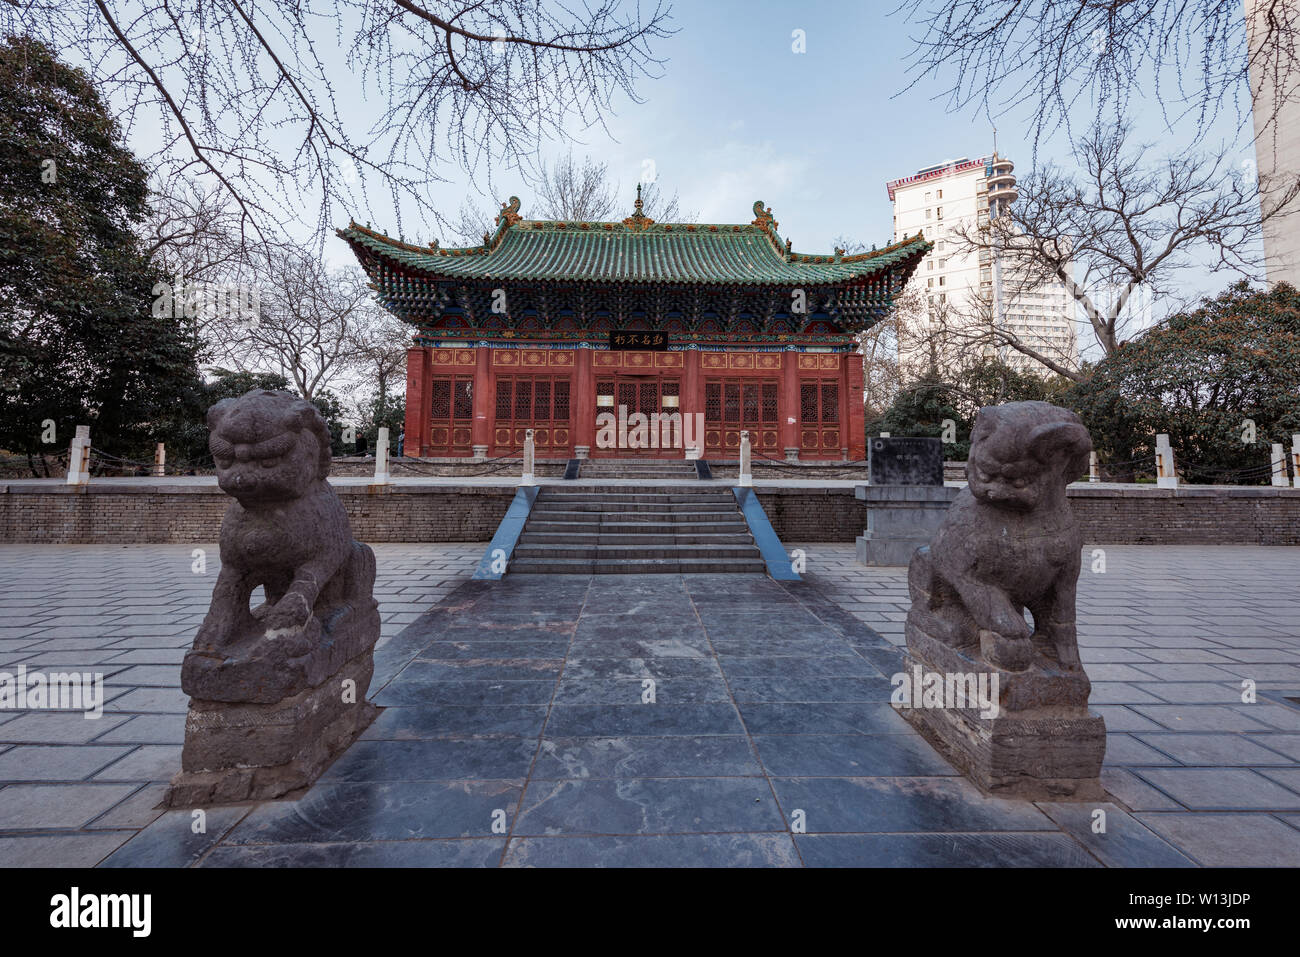 Paisajes arquitectónicos clásicos como Hu Gong Temple, Gente del Parque, de la ciudad de Zhengzhou, provincia de Henan, en la primavera Foto de stock